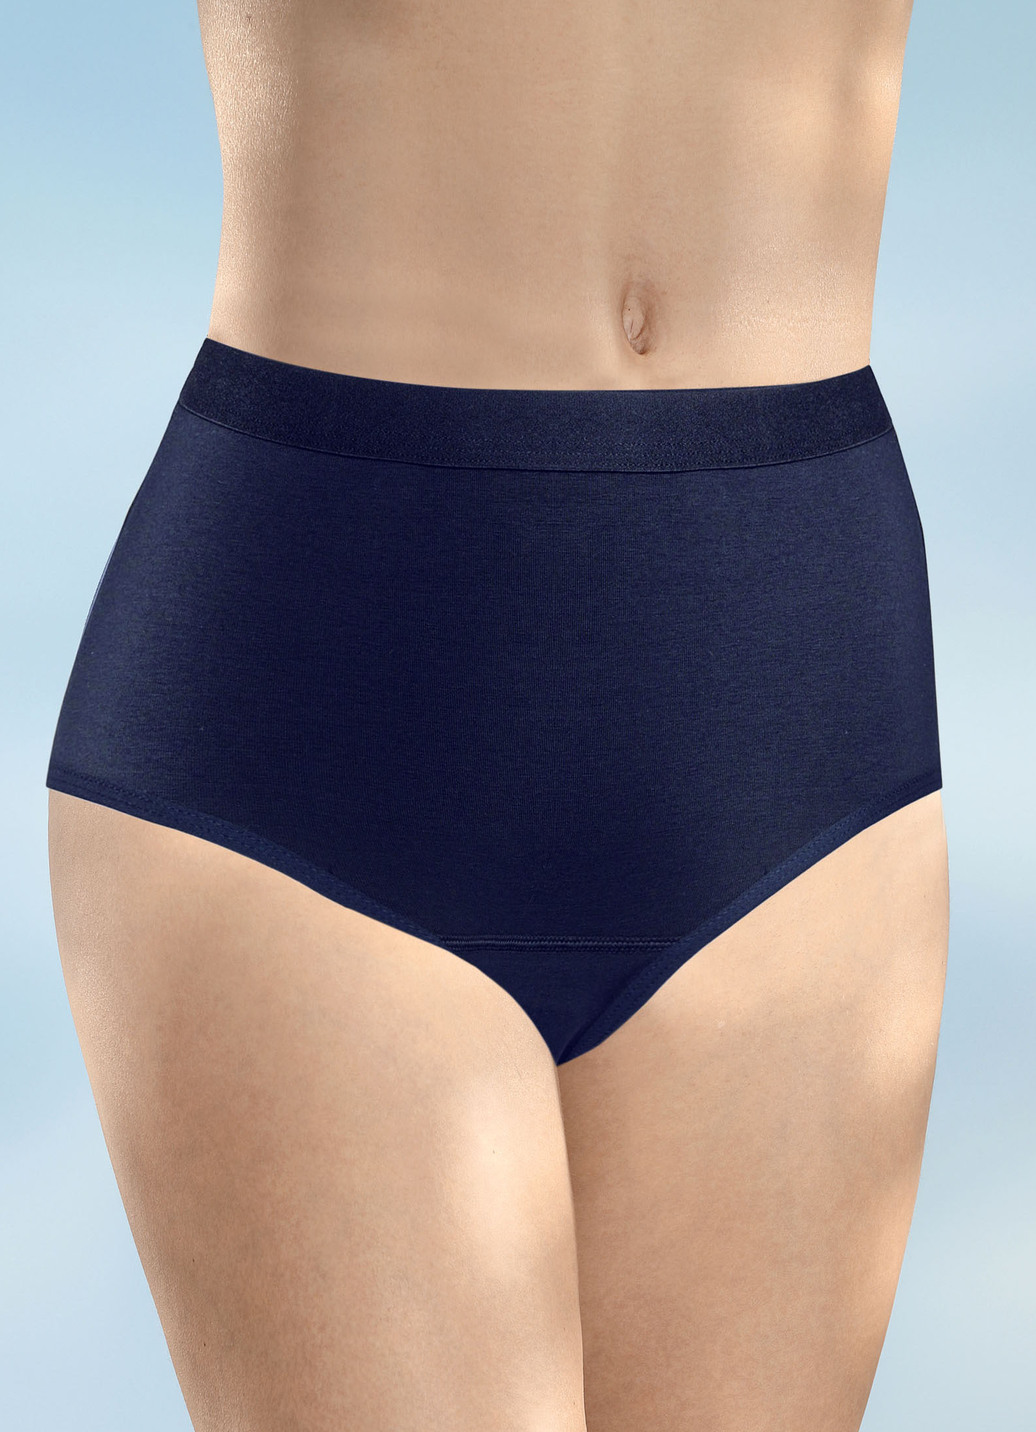 Damen Inkontinenz Taillen-Slip Midi von Con-ta, 1 Lage Frottee, einzeln, Marine, Größe 40 von CON-TA